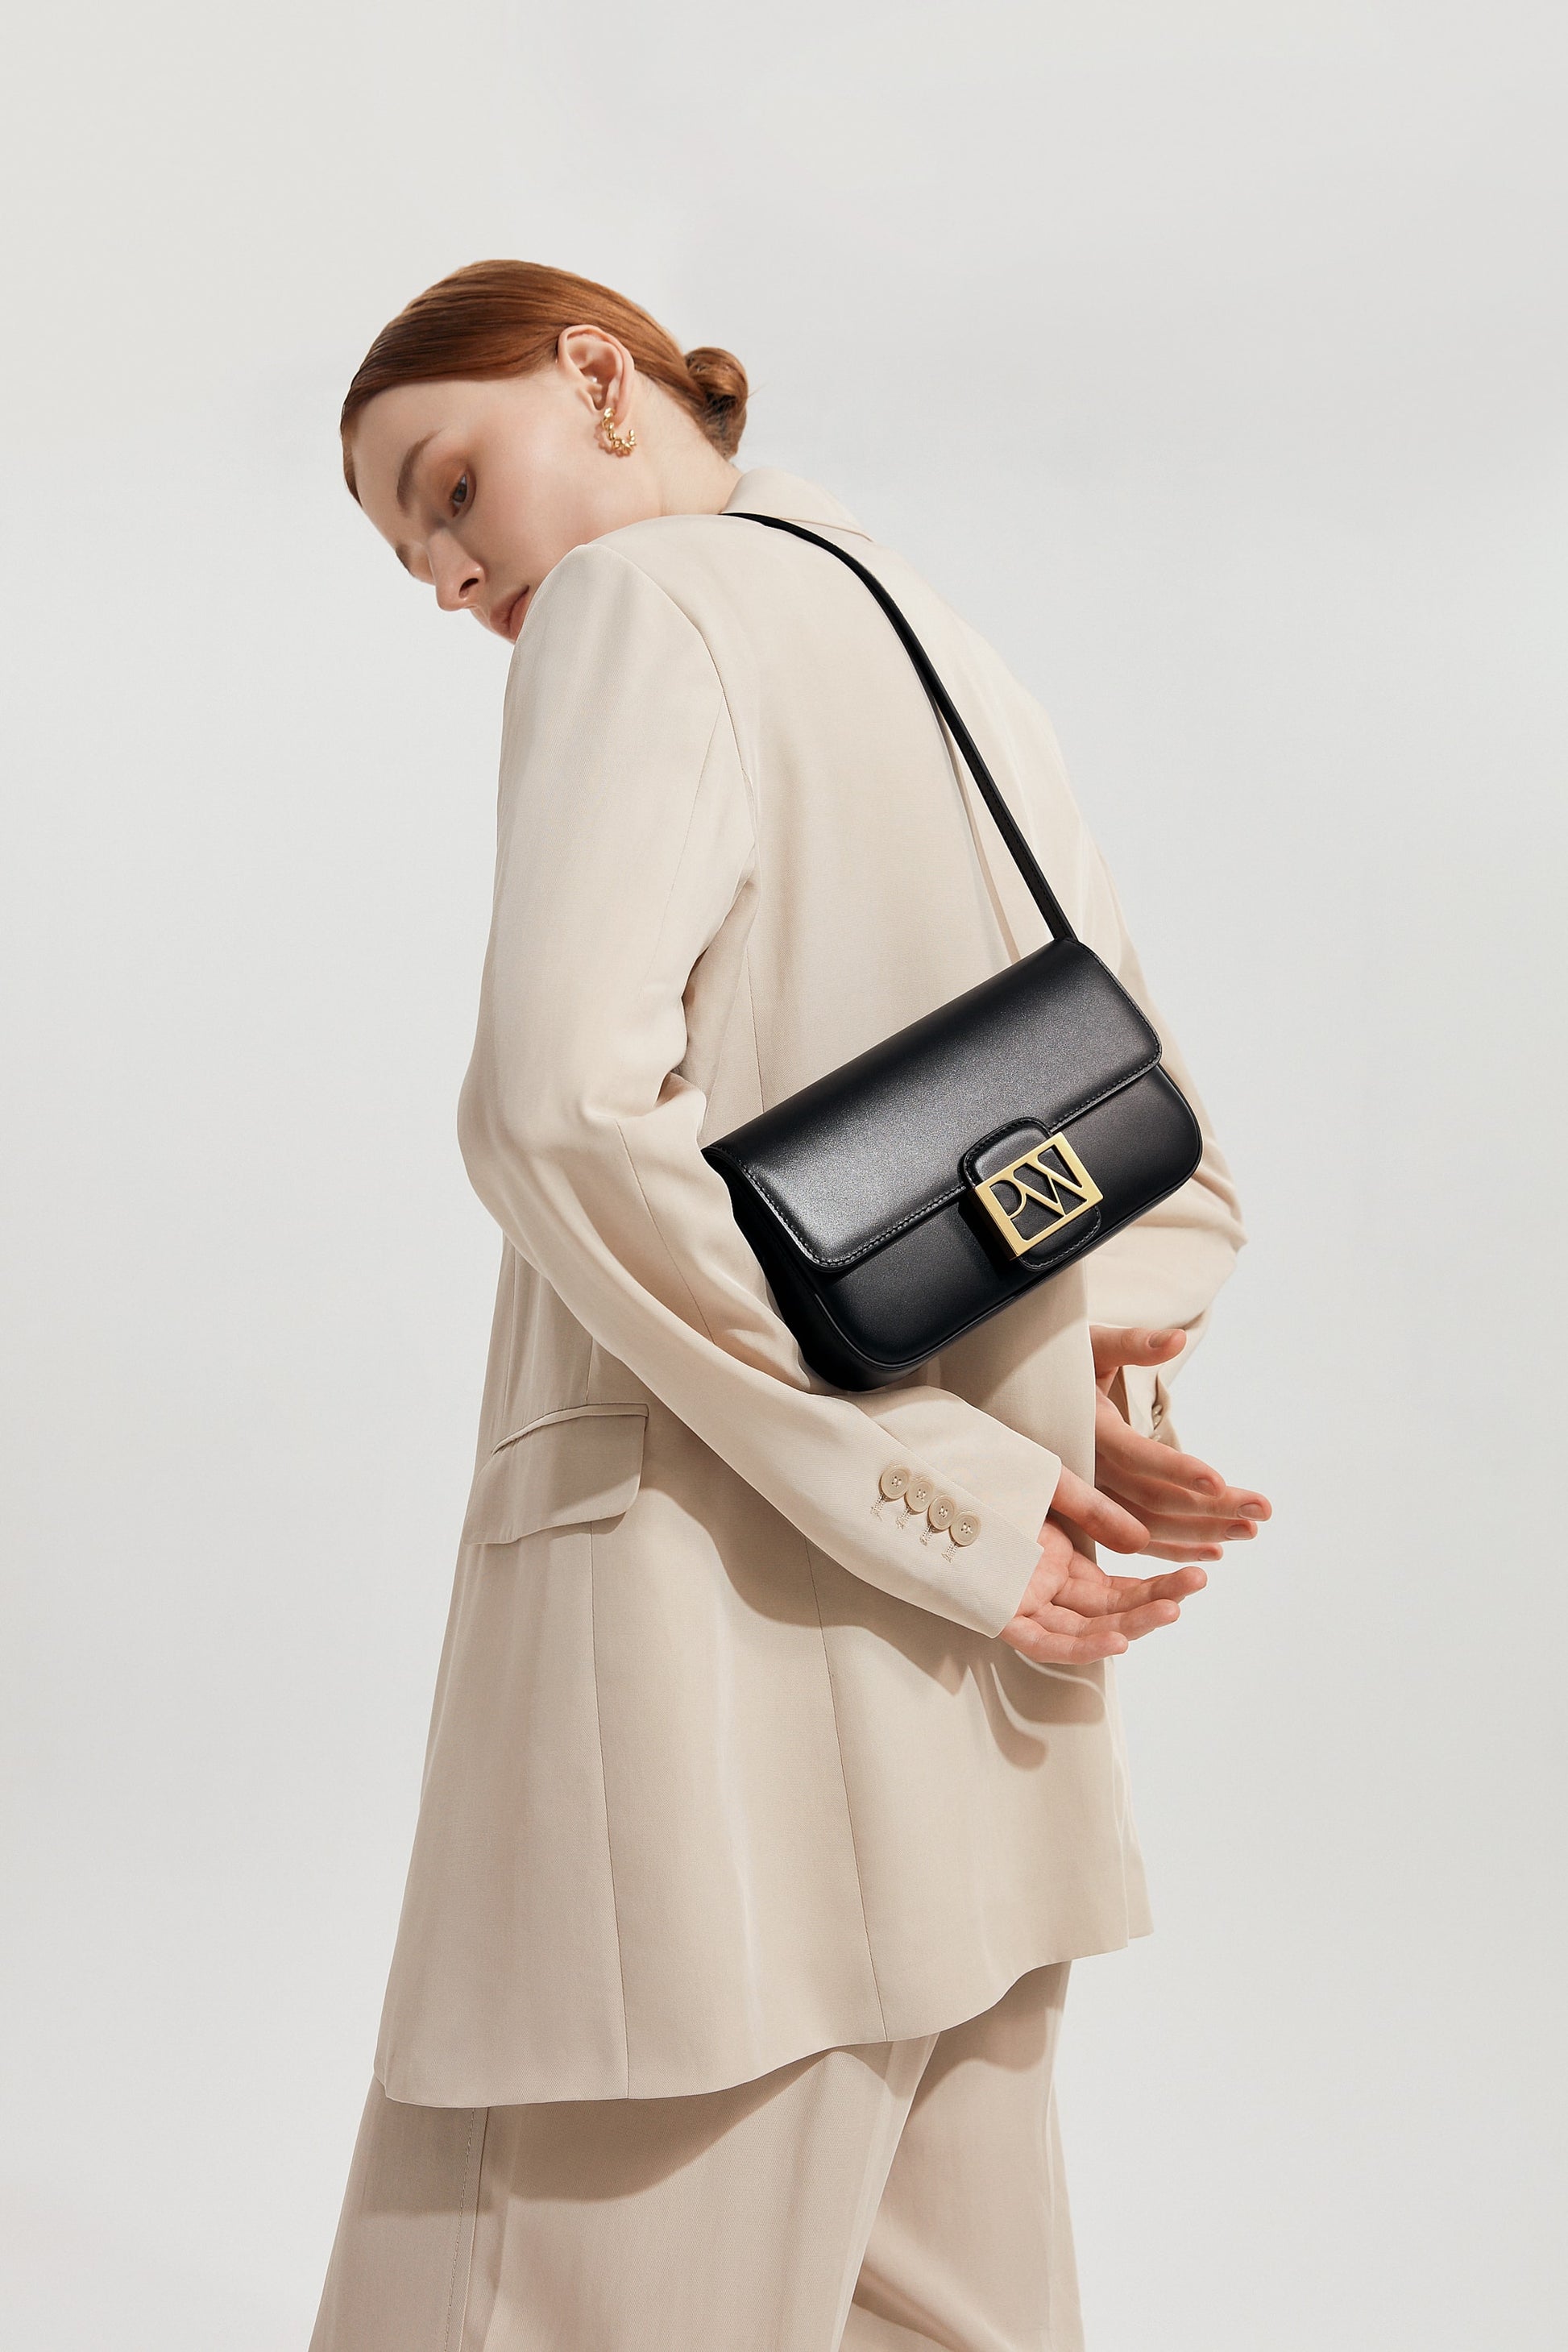 Soho Baguette Bag in Black | Parisa Wang | Featured